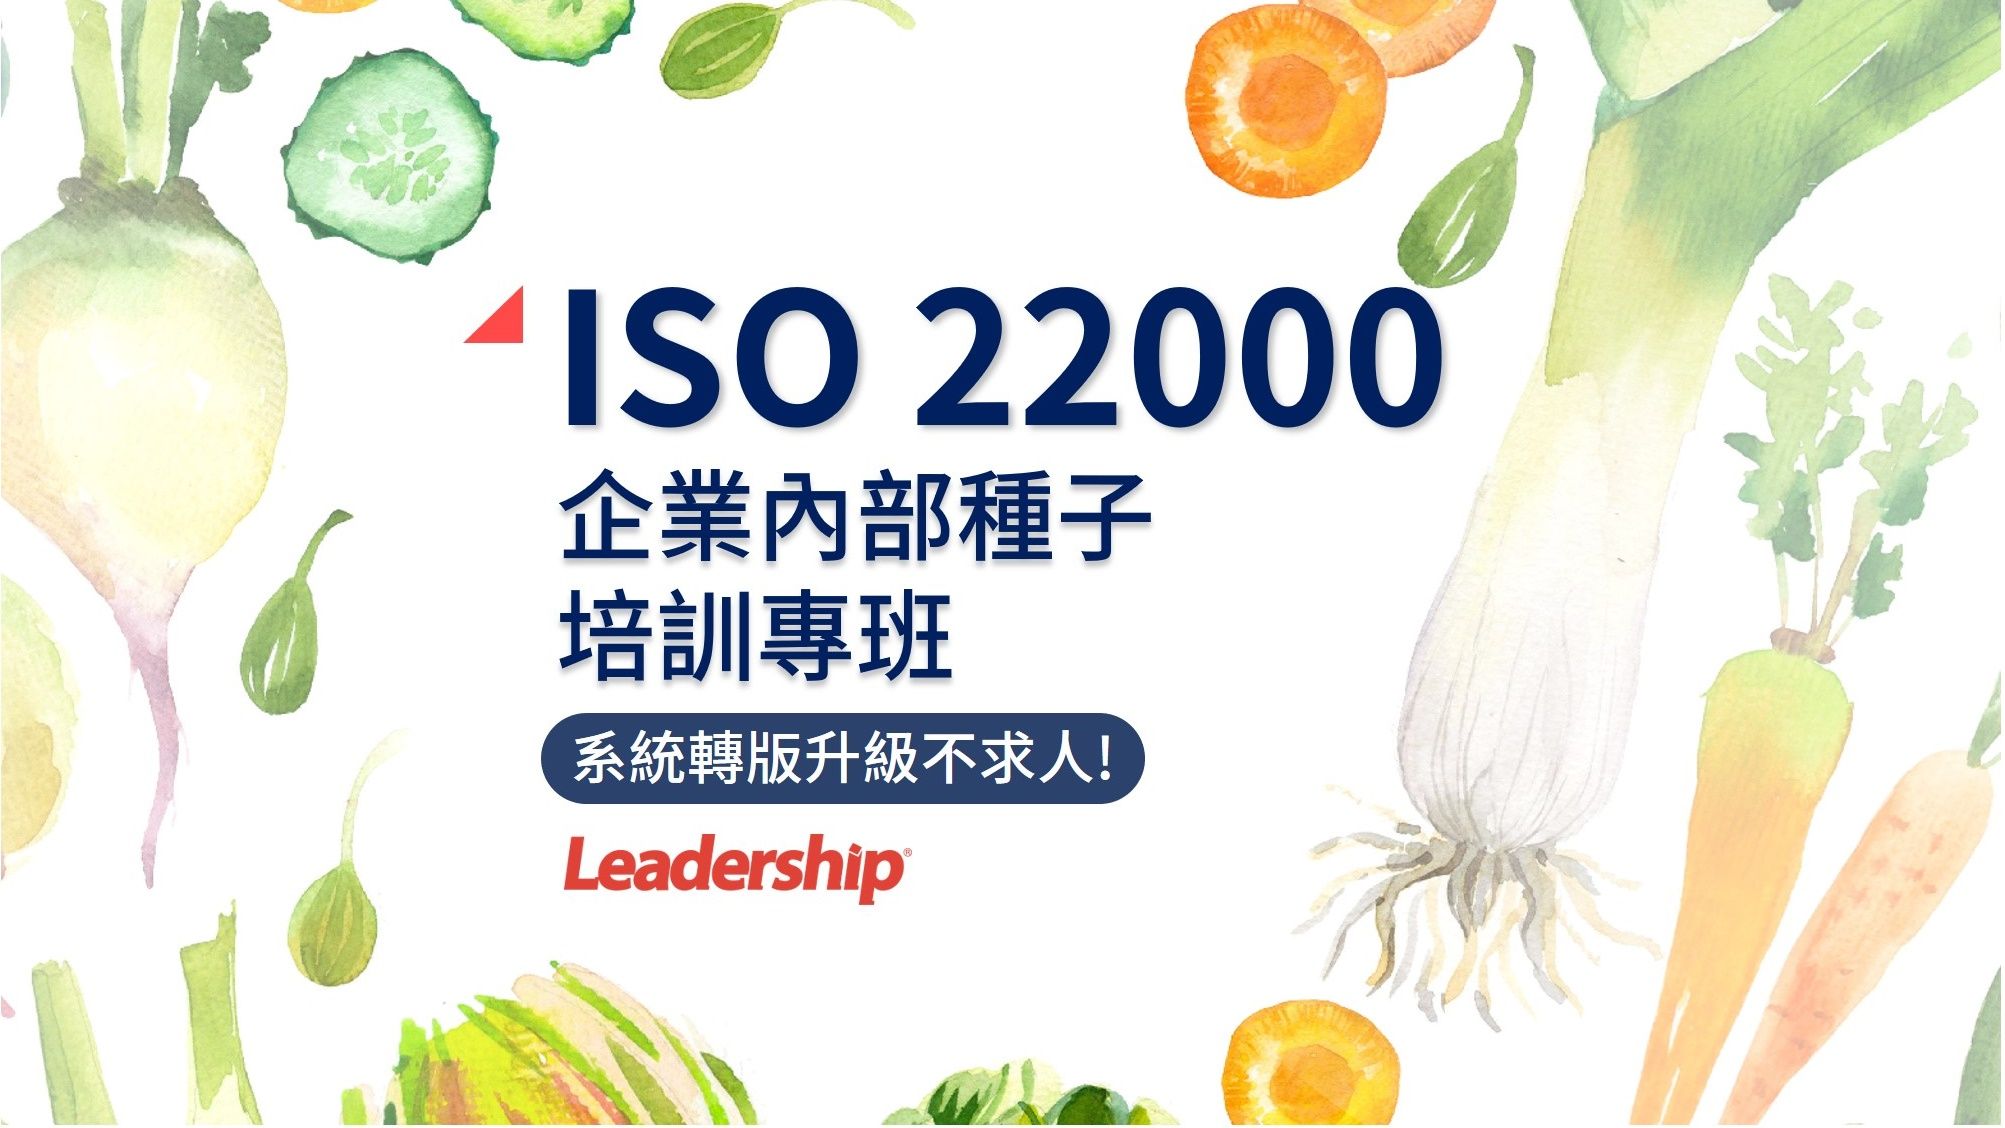 ISO 22000 :2018轉版升級，企業內部種子培訓專班